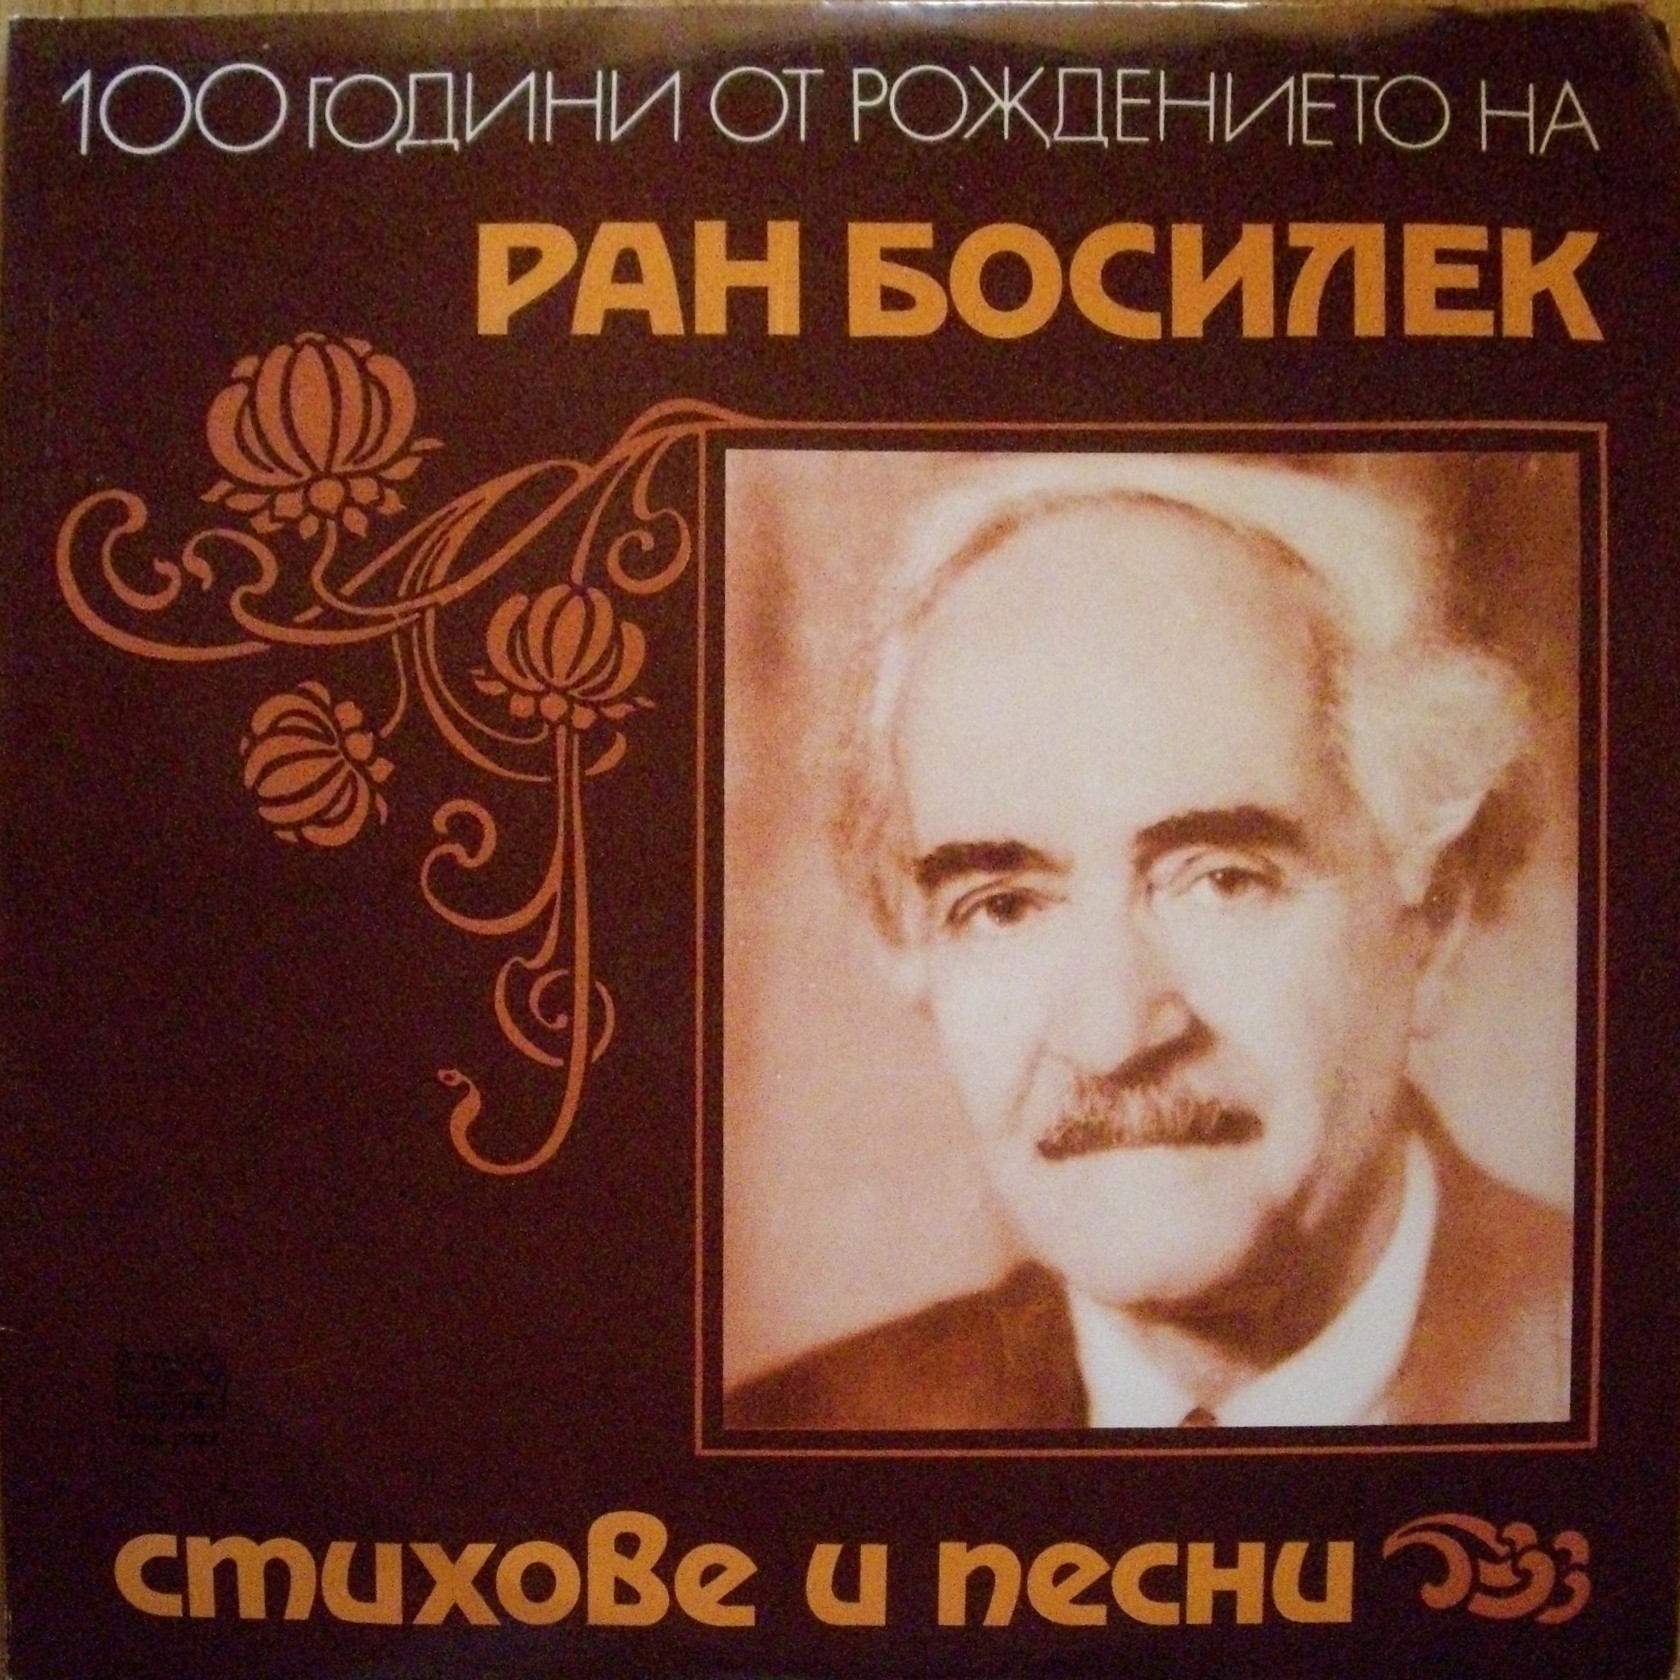 100 години от рождението на Ран Босилек. Стихове и песни